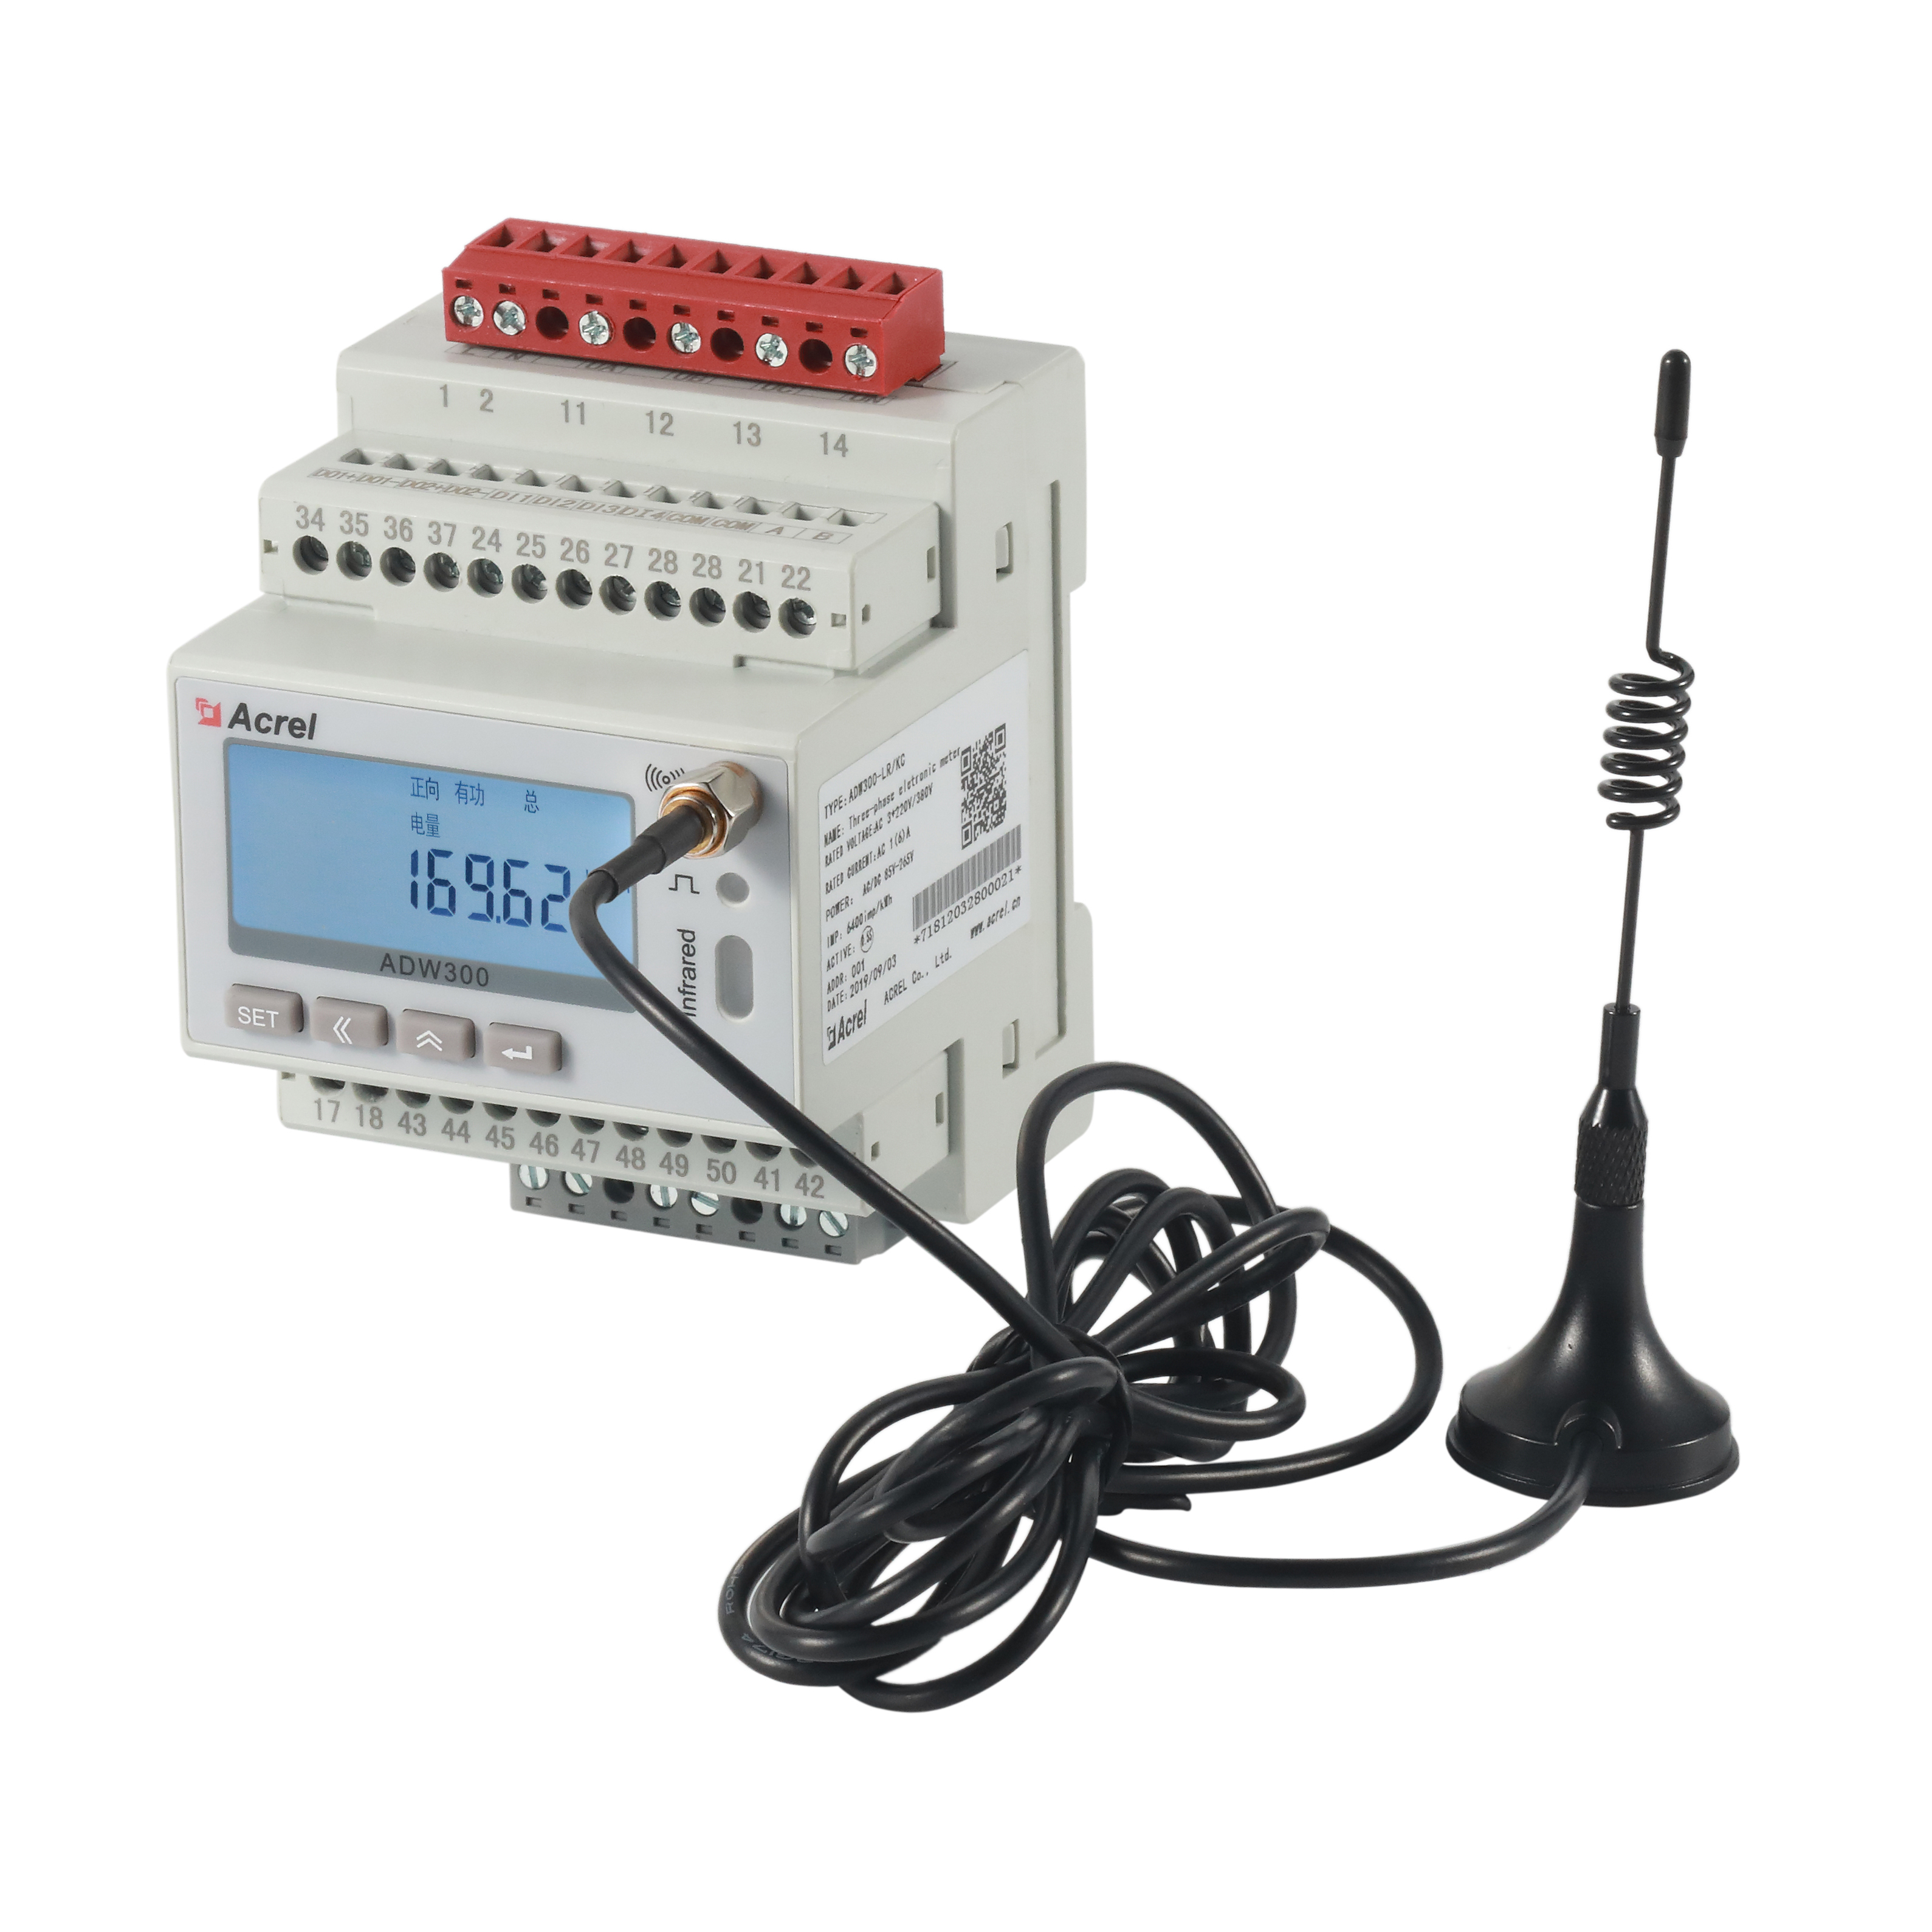 安科瑞ADW300/4GU无线计量电表EIOT能源物联网平台免调试易部署